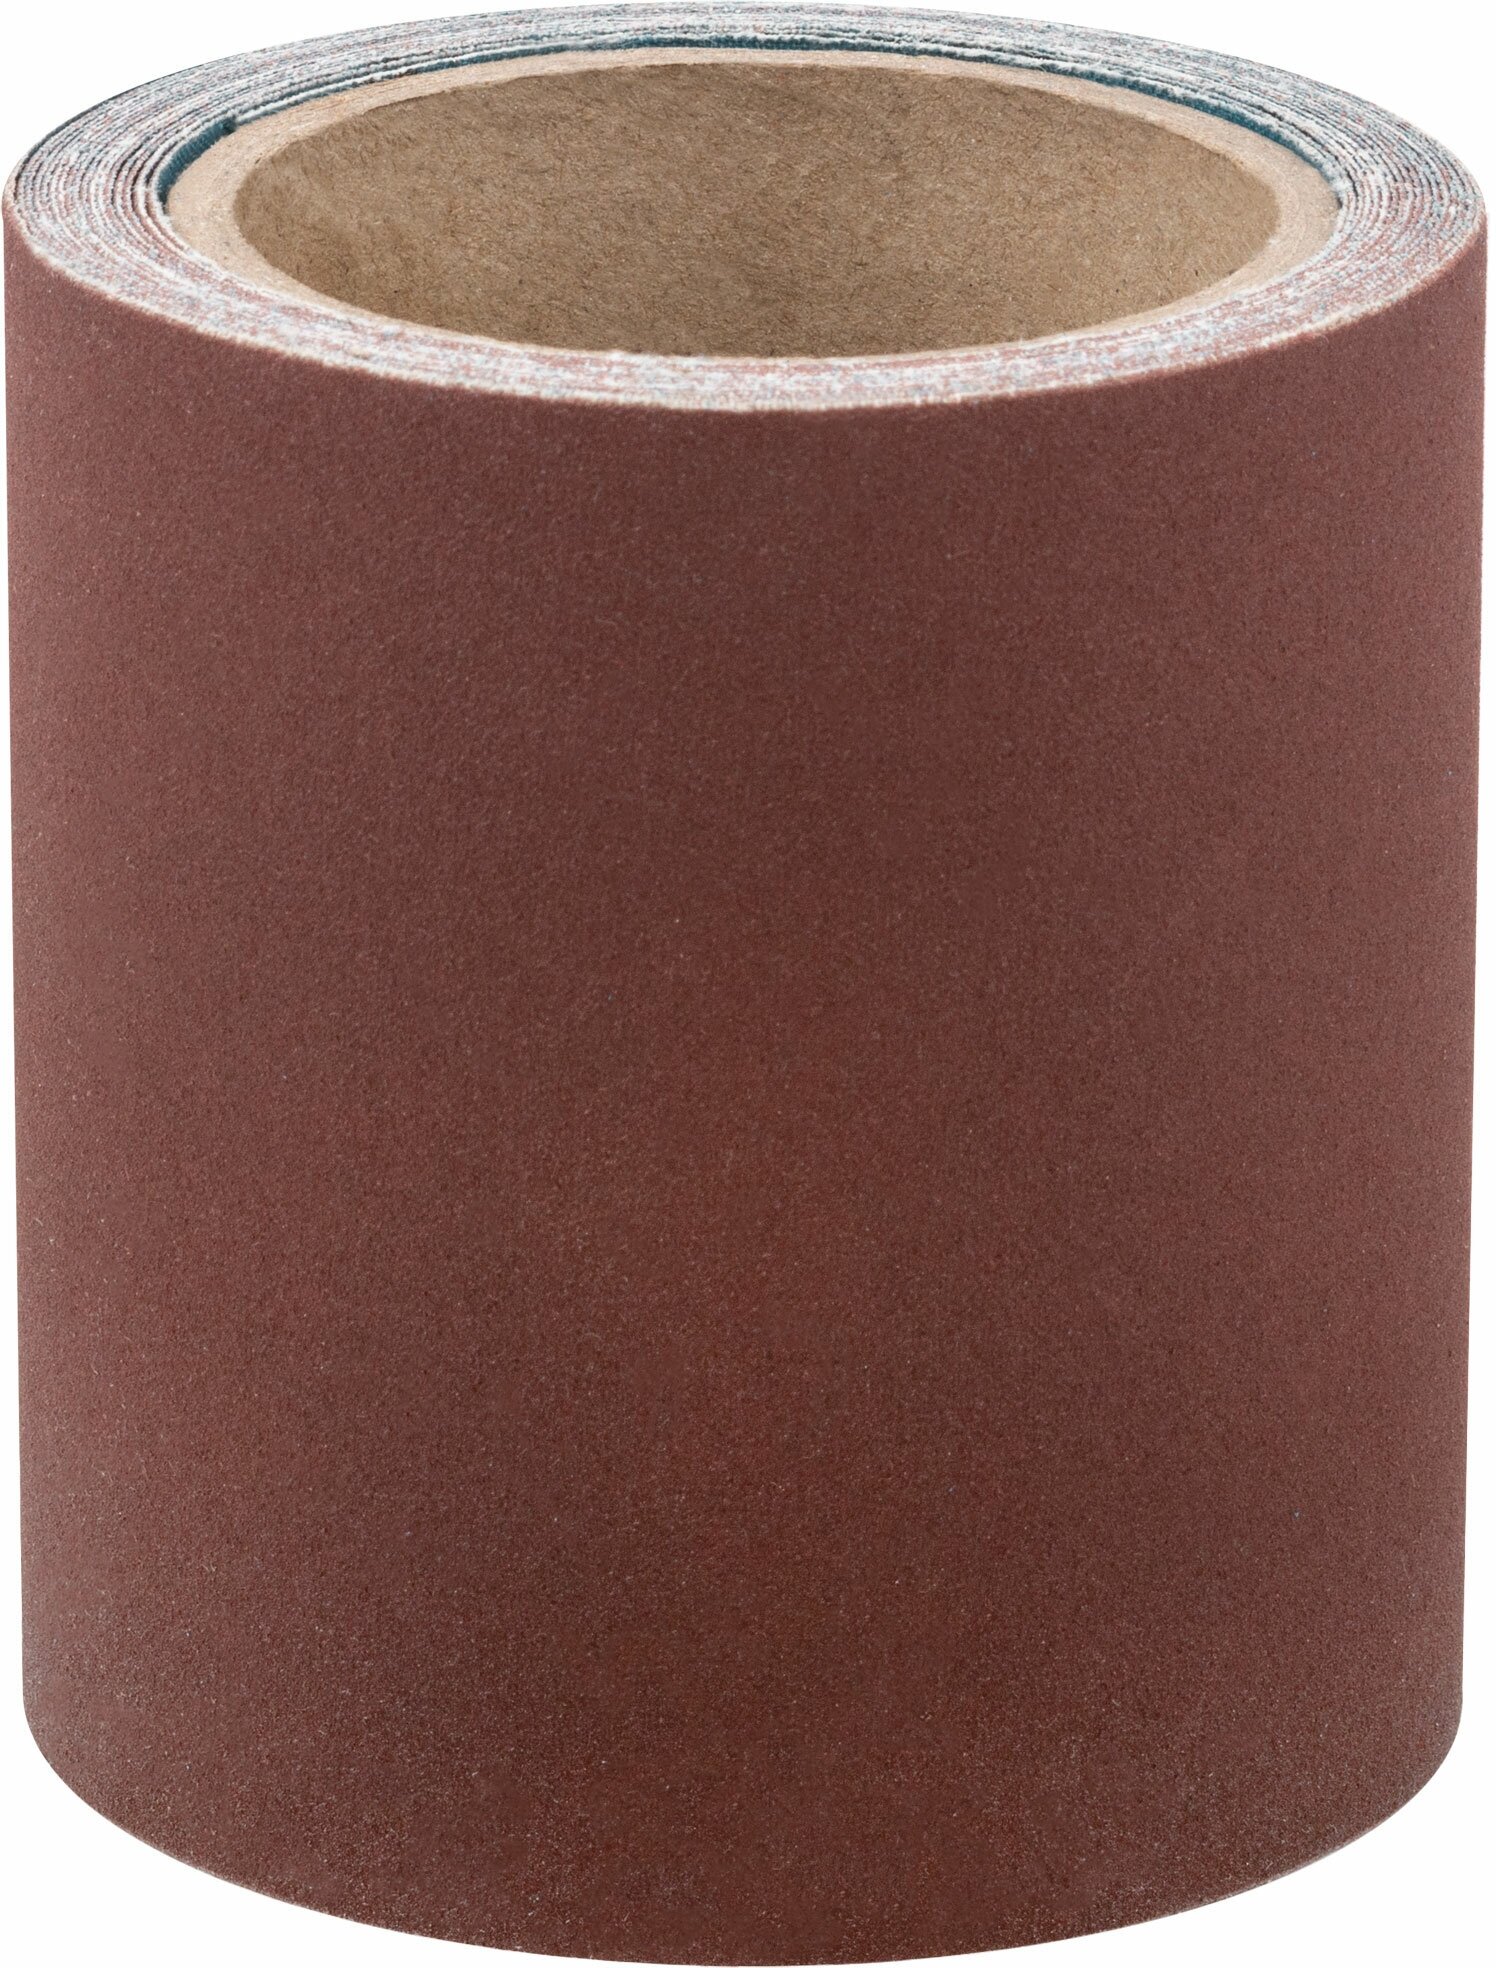 Рулон шлифовальный мини на тканевой основе, алюминий-оксидный абразивный слой 115 мм х 5 м, Р 180